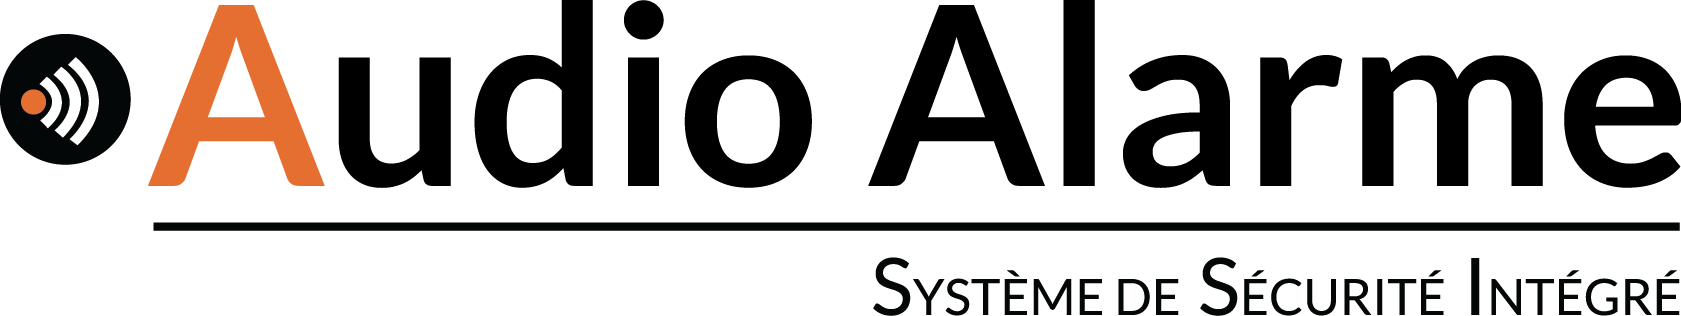 Audio Alarme logo v2015